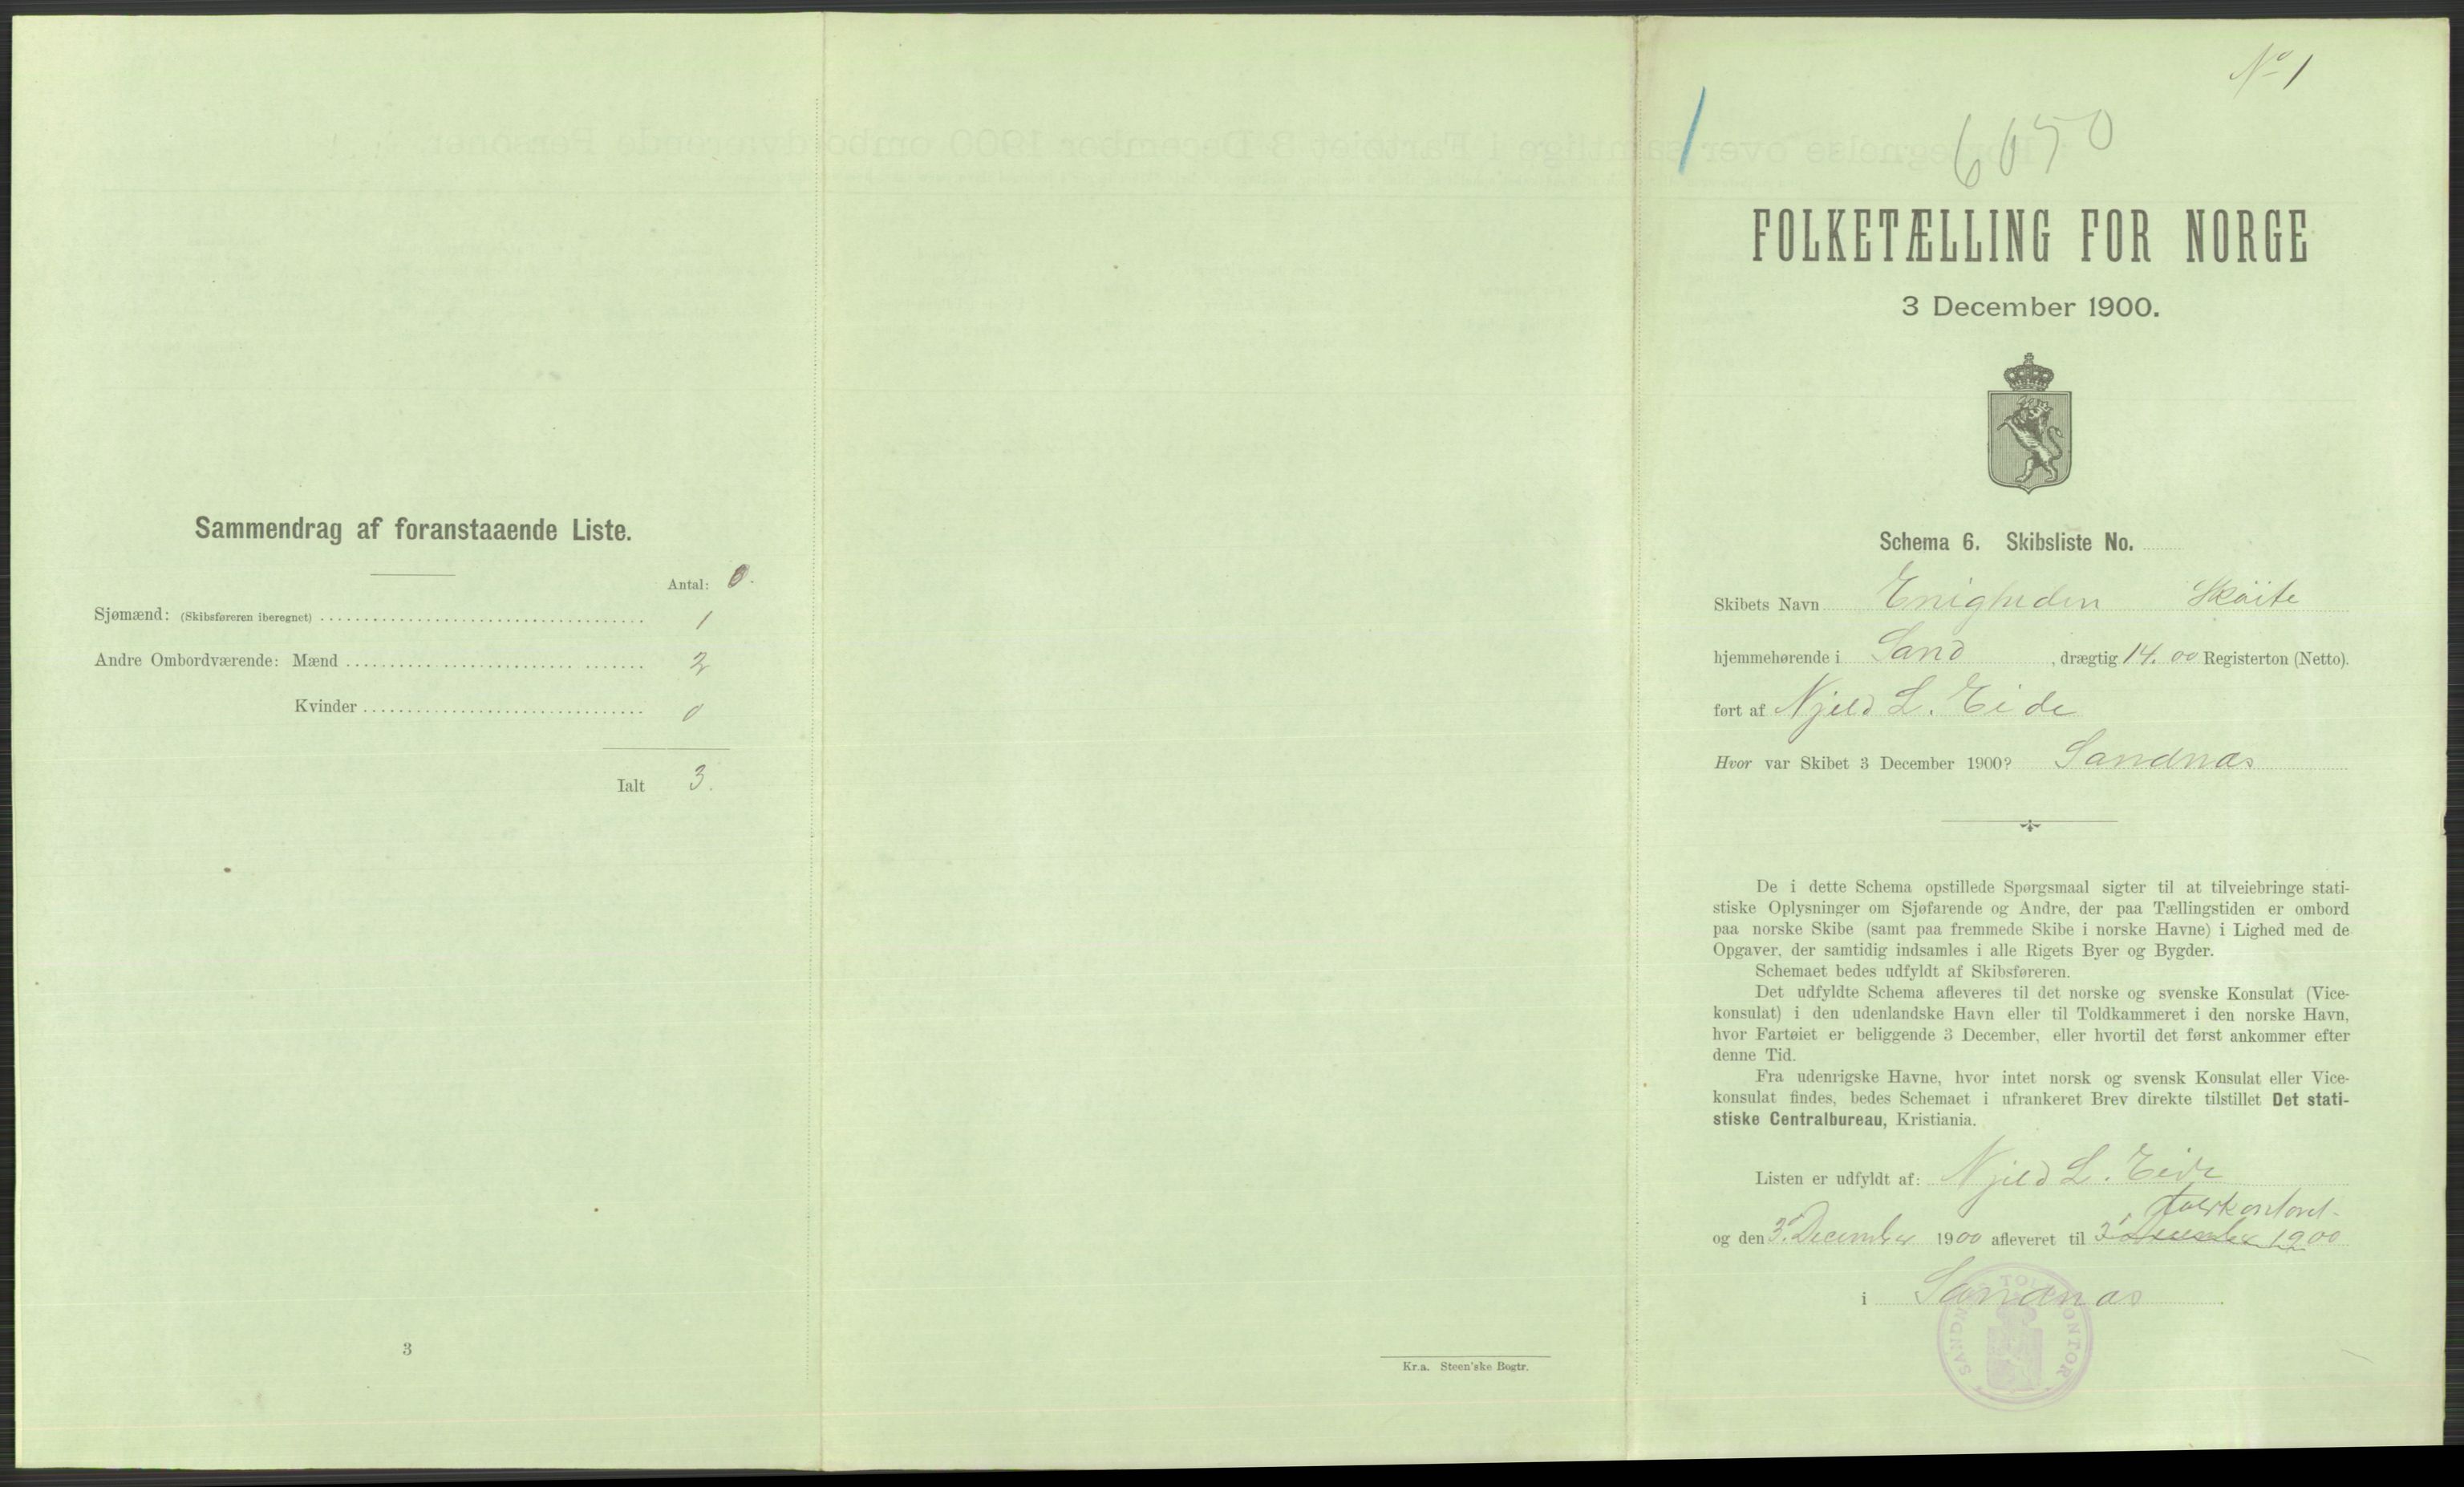 RA, Folketelling 1900 - skipslister med personlister for skip i norske havner, utenlandske havner og til havs, 1900, s. 879